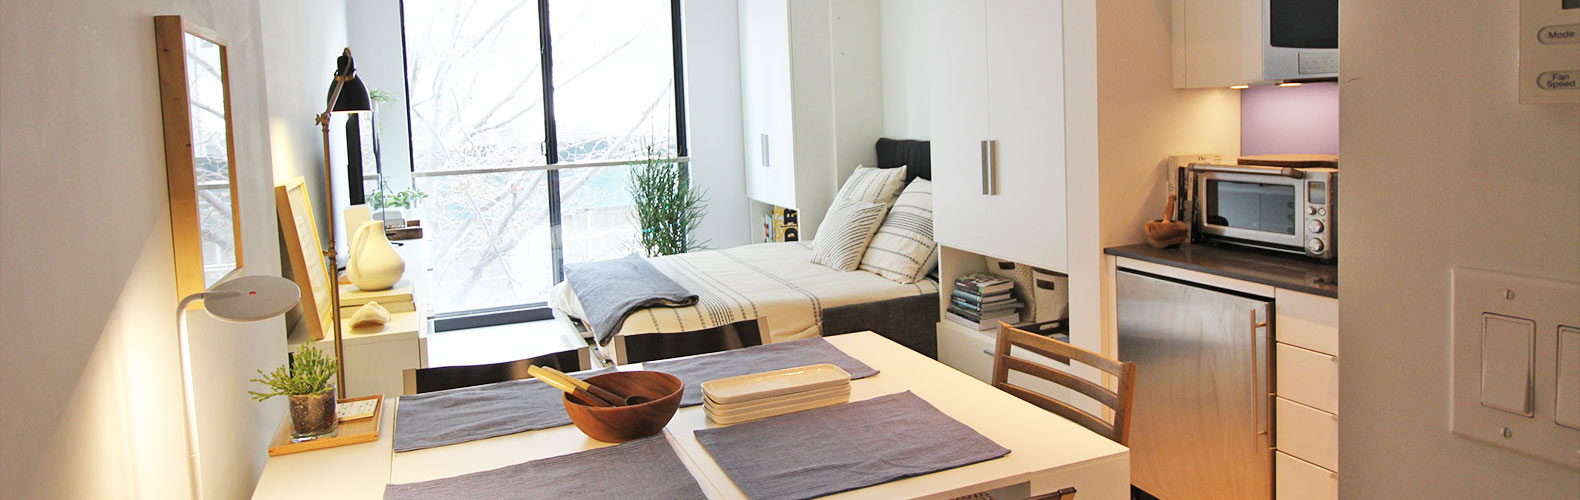  apartemen  dengan gaya korea  3 CAT DUCO KAYU